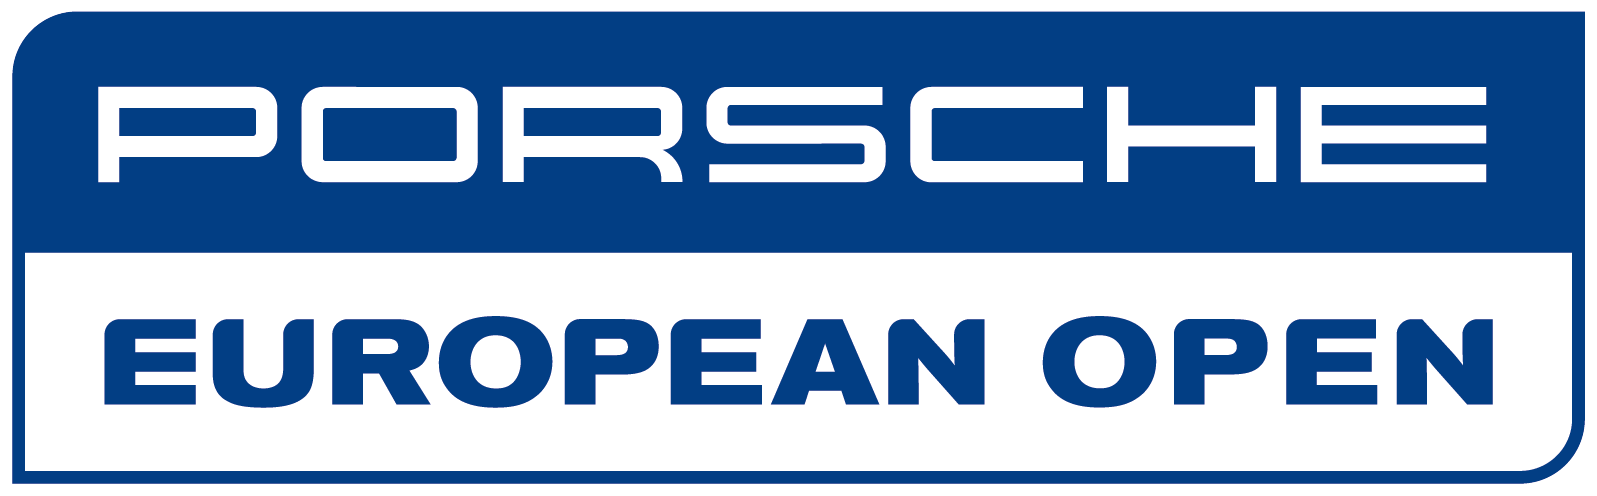 European Open 2024